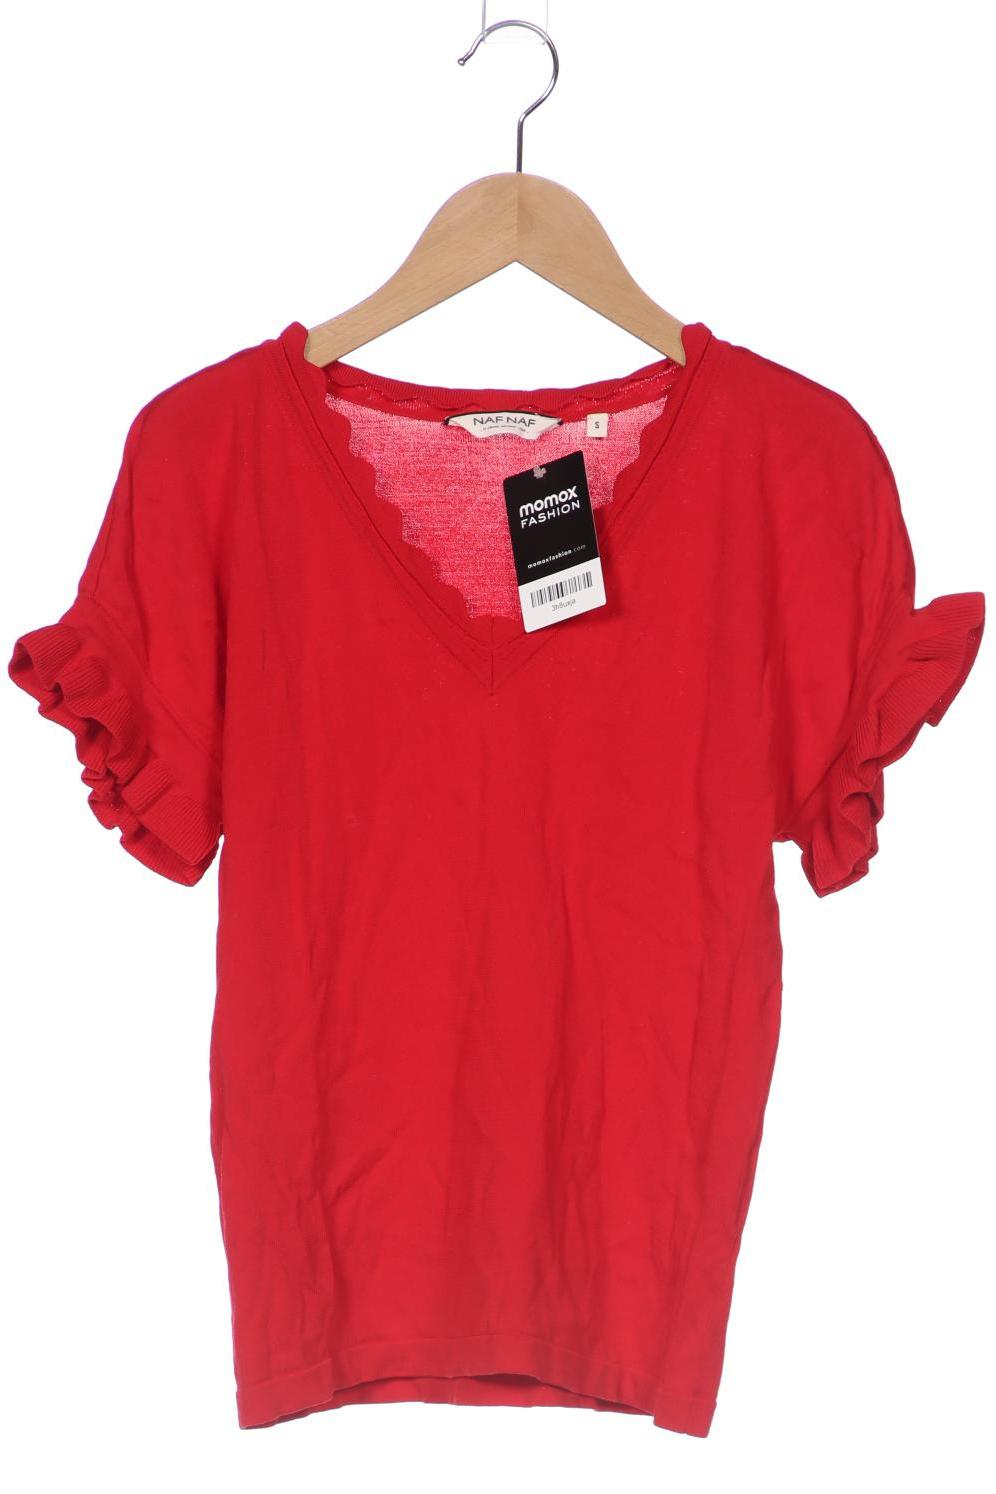 NAF NAF Damen T-Shirt, rot, Gr. 36 von Naf Naf